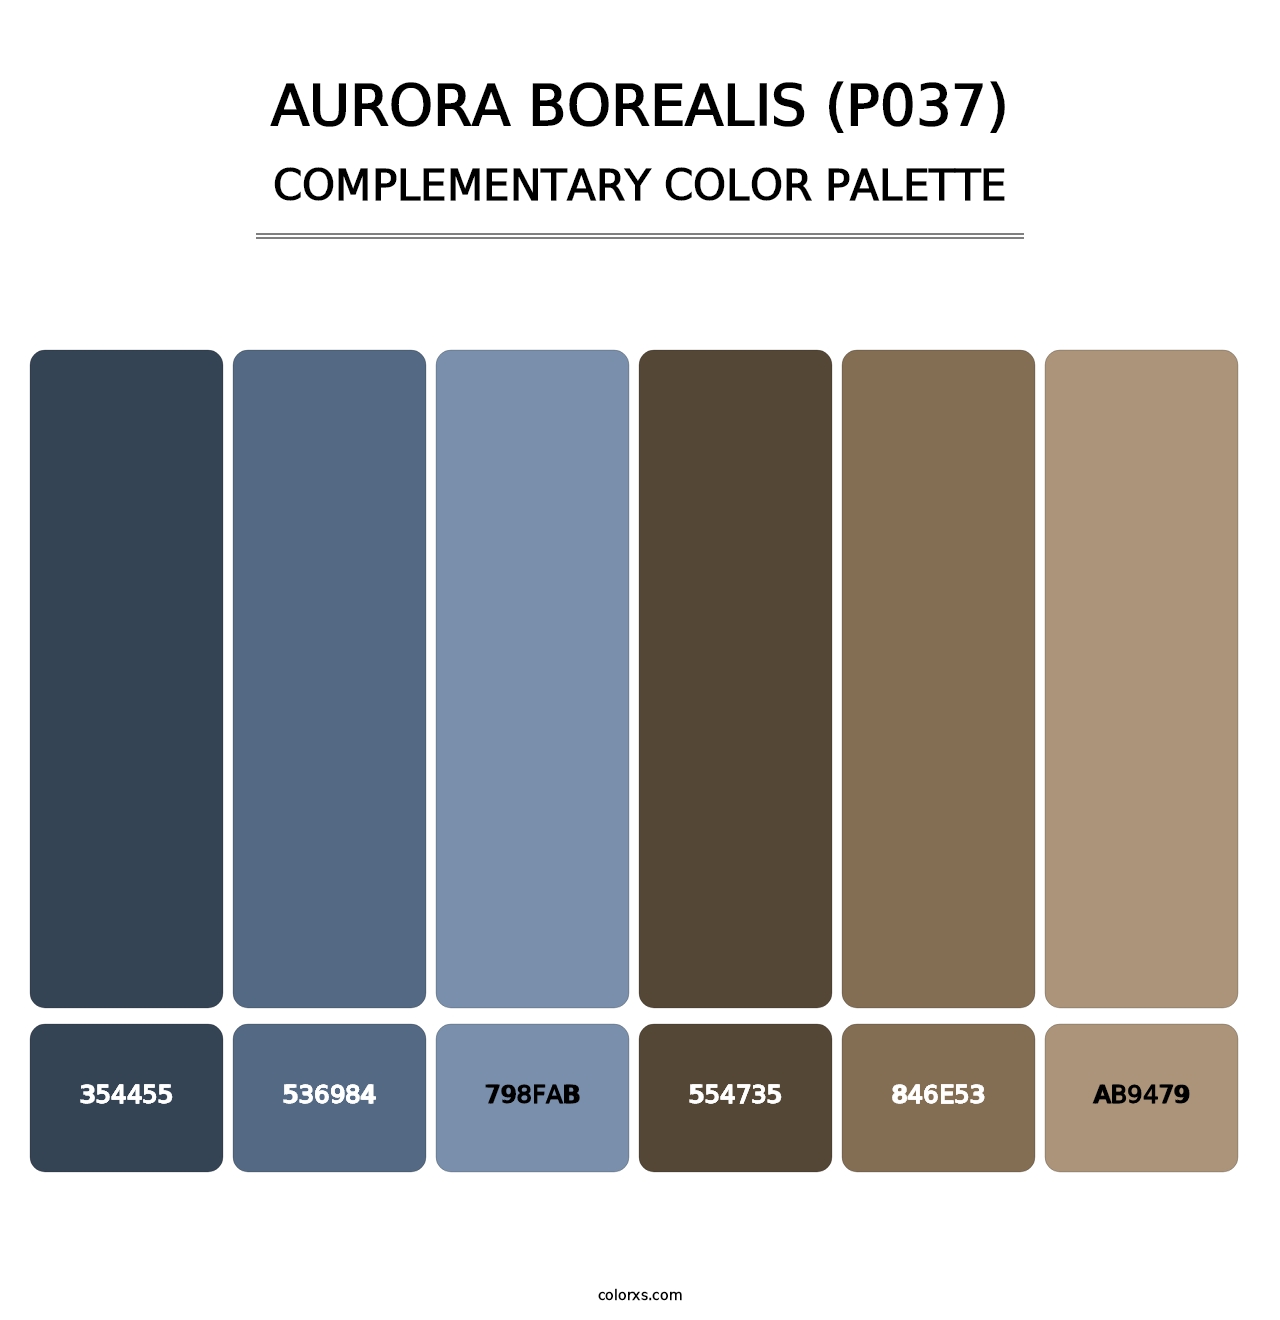 Aurora Borealis (P037) - Complementary Color Palette